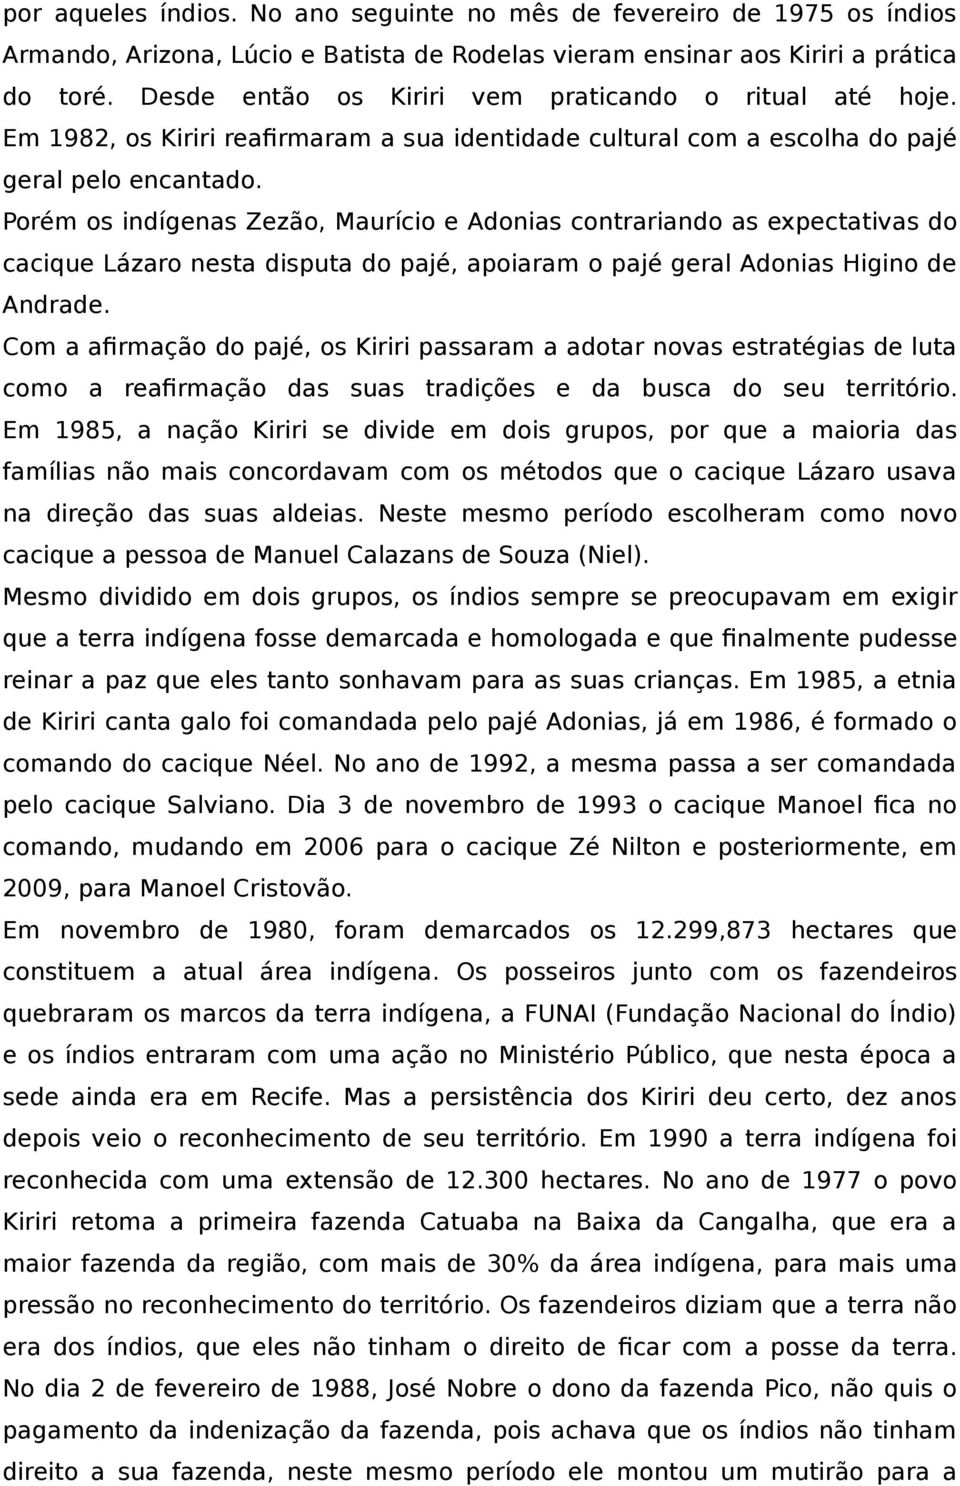 Porém os indígenas Zezão, Maurício e Adonias contrariando as expectativas do cacique Lázaro nesta disputa do pajé, apoiaram o pajé geral Adonias Higino de Andrade.